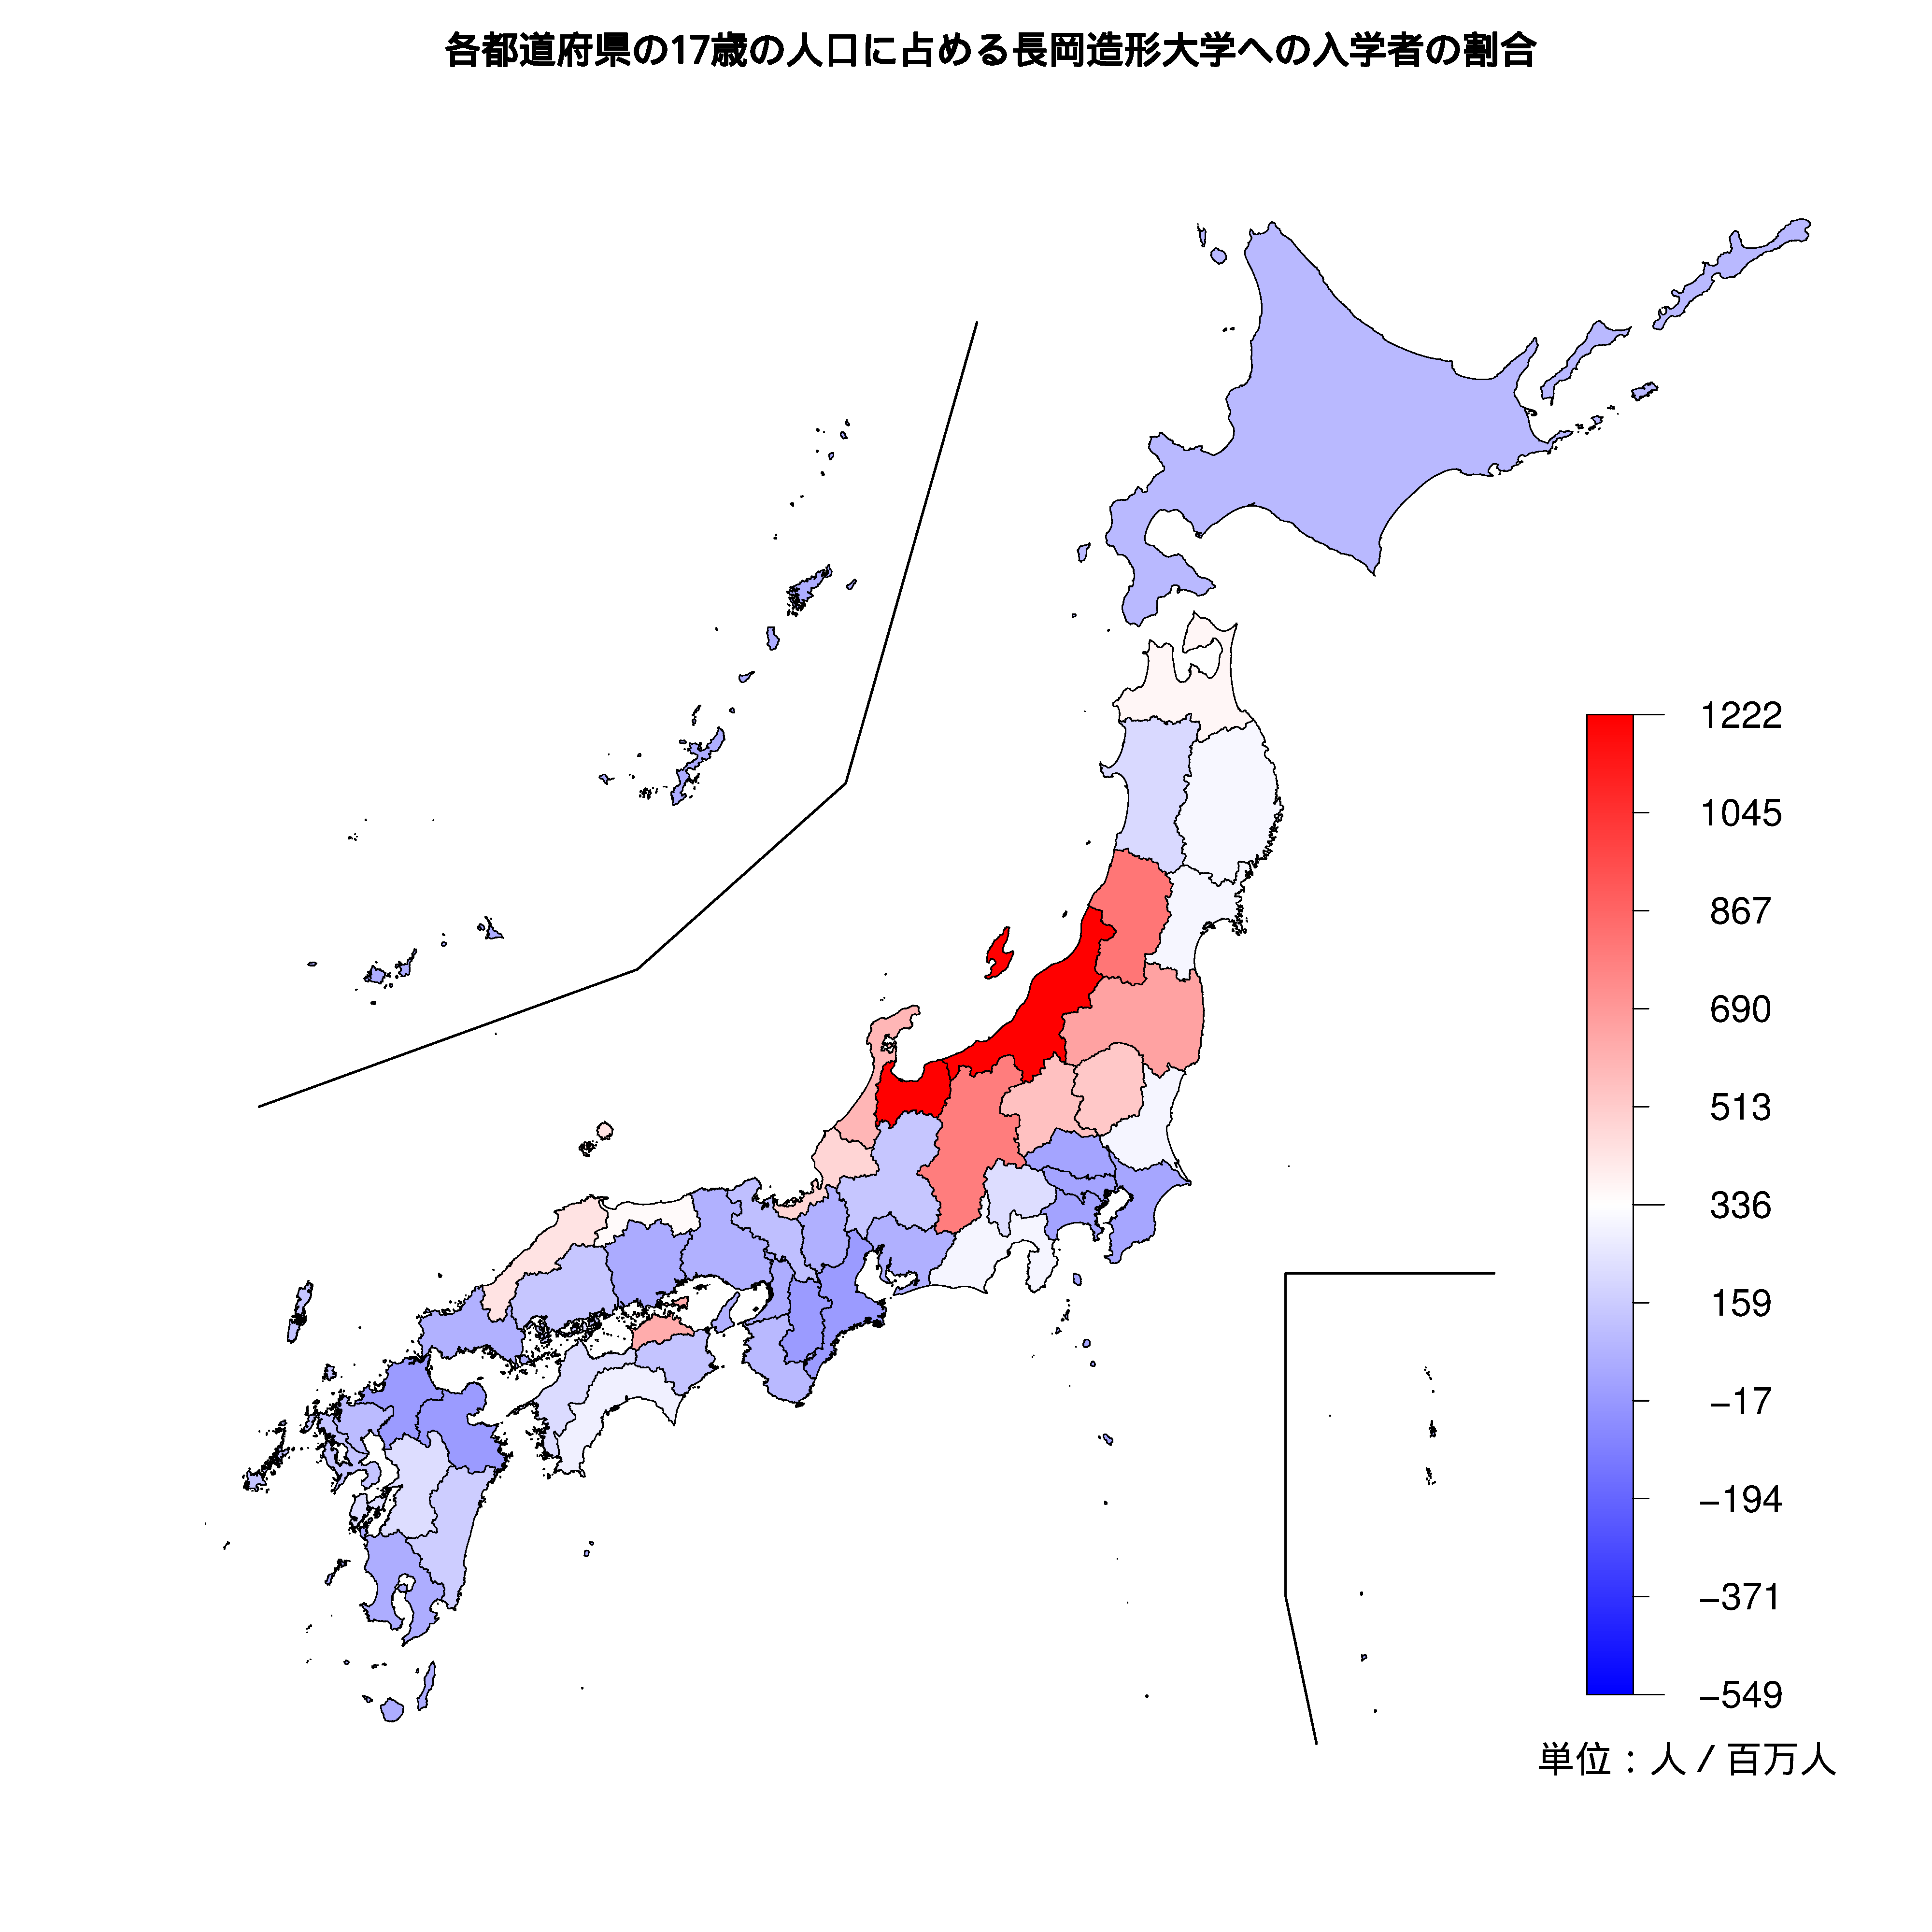 長岡造形大学への入学者が多い都道府県の色分け地図